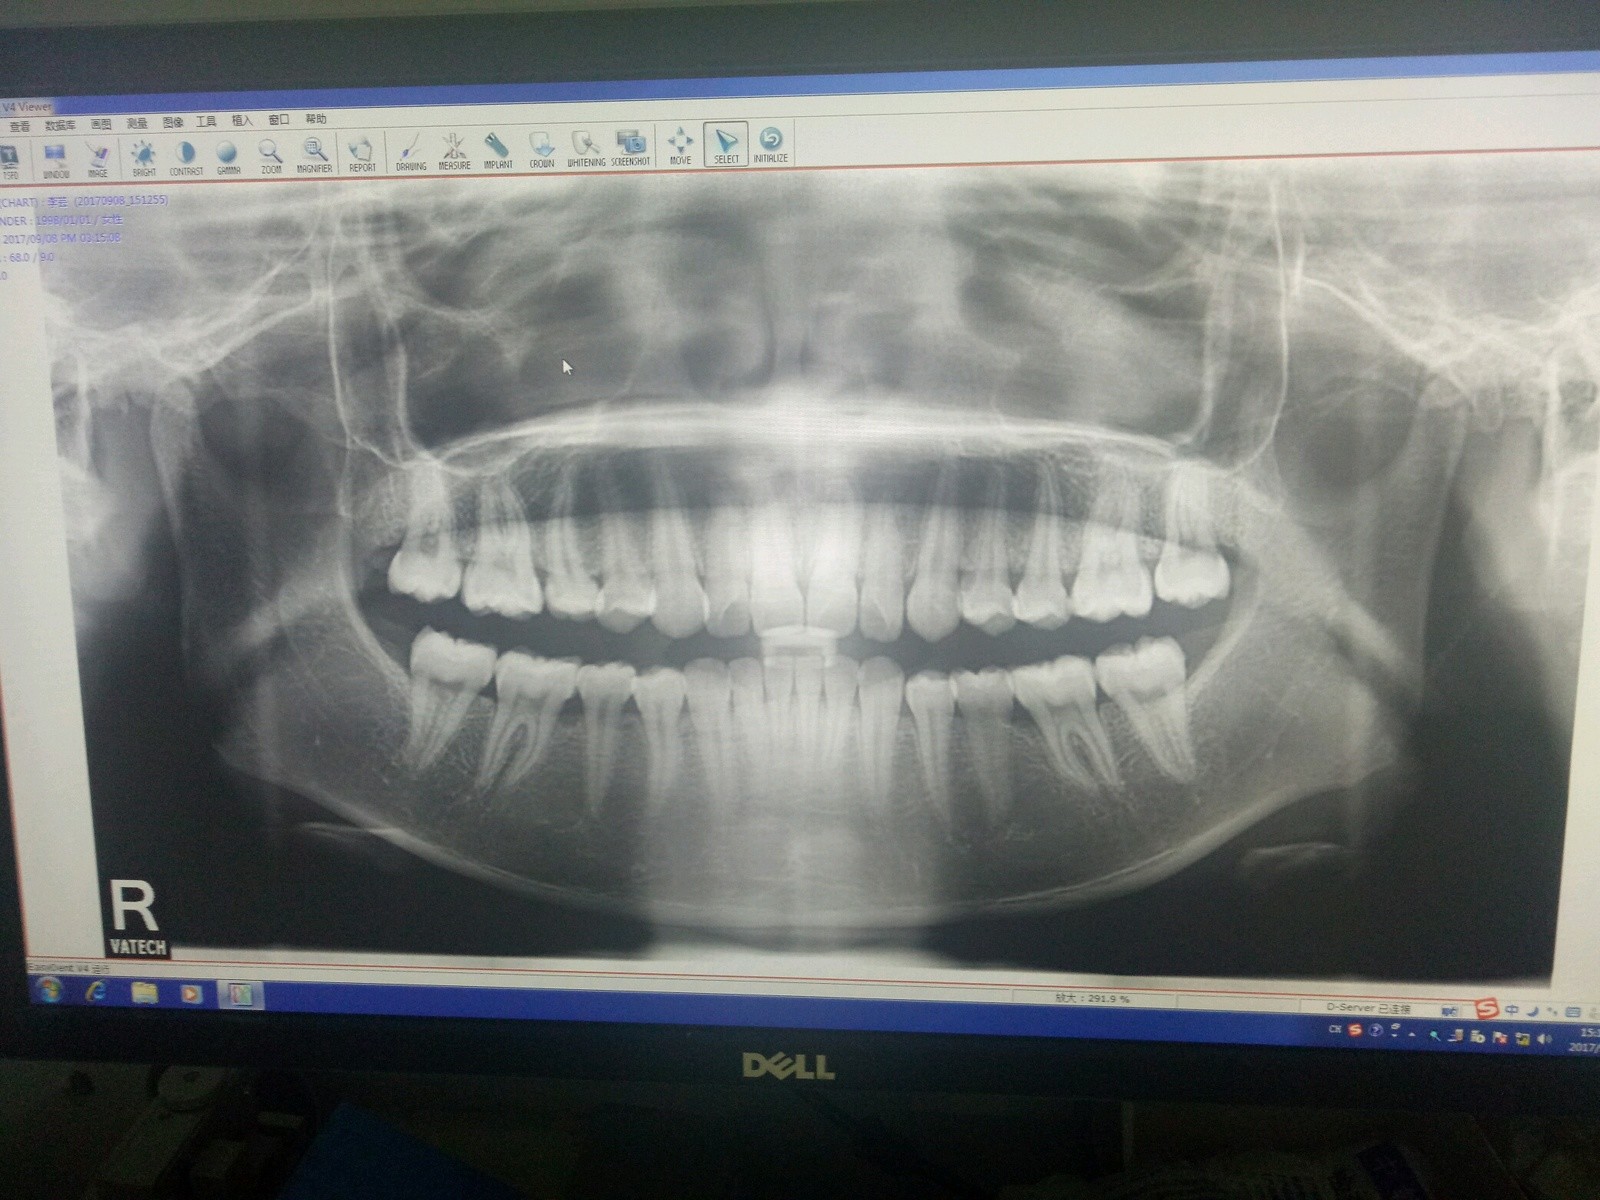 再来几张牙片的,和正面牙齿的情况给大家看下